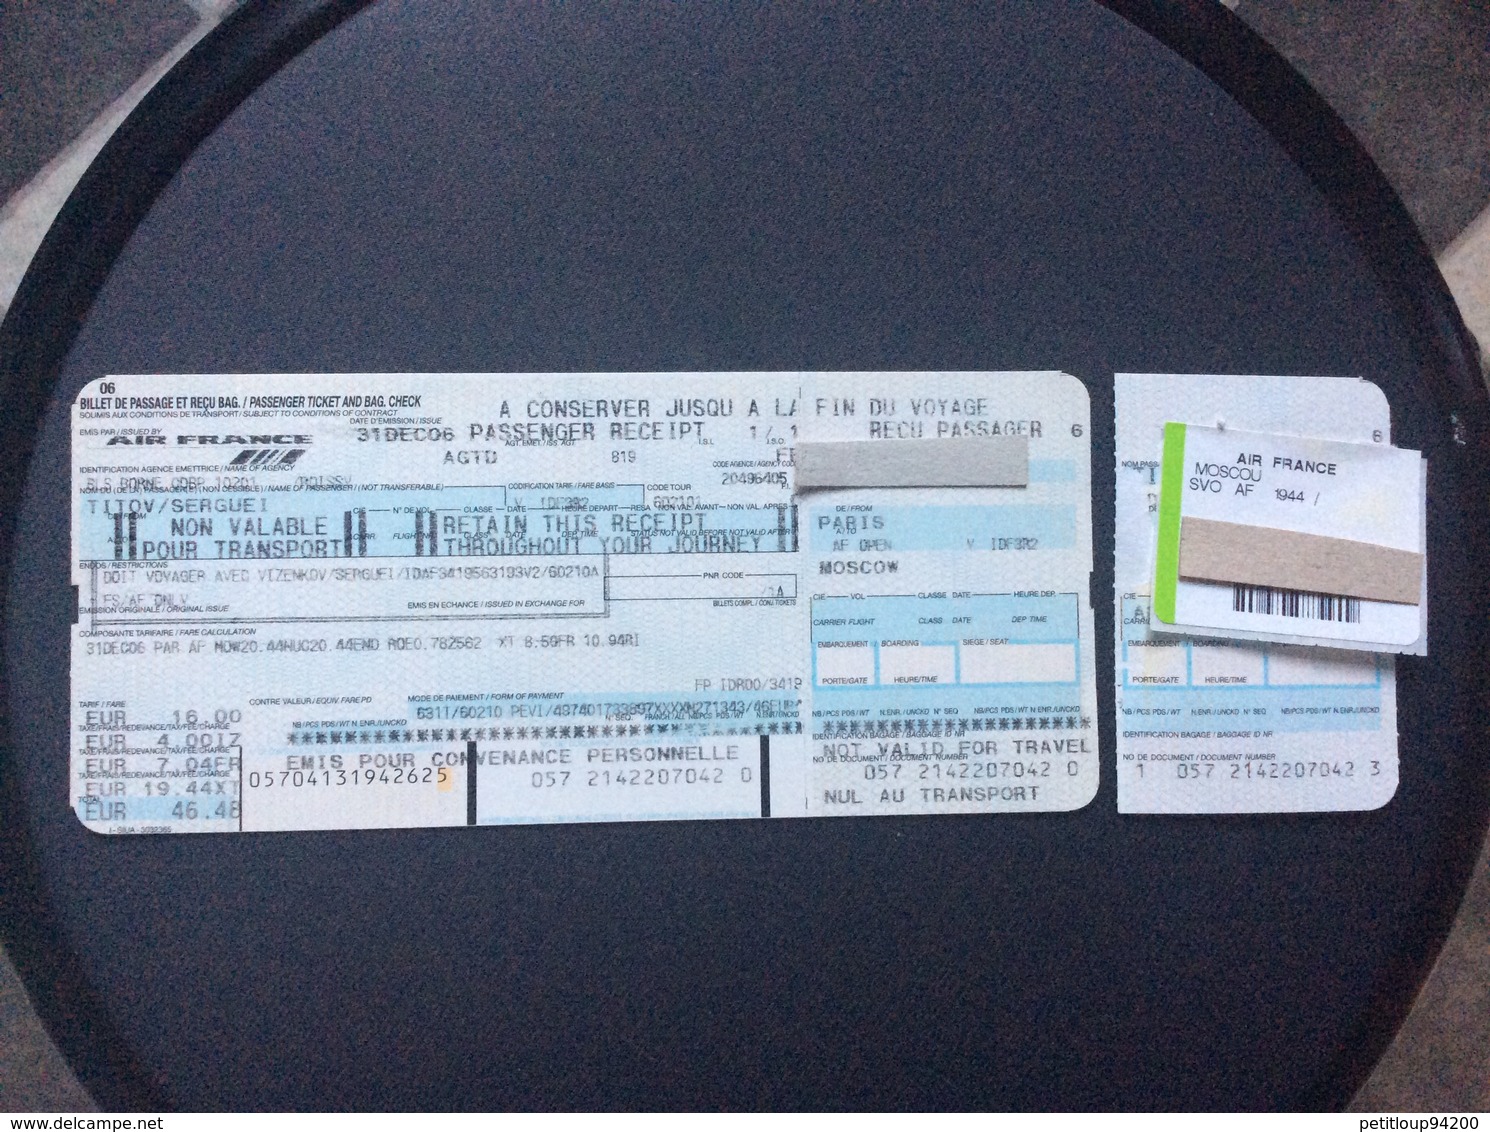 AIR FRANCE Billet De Passage Et Recu Bagage/Passenger Ticket And Bag Check PARIS>MOSCOU - Biglietti